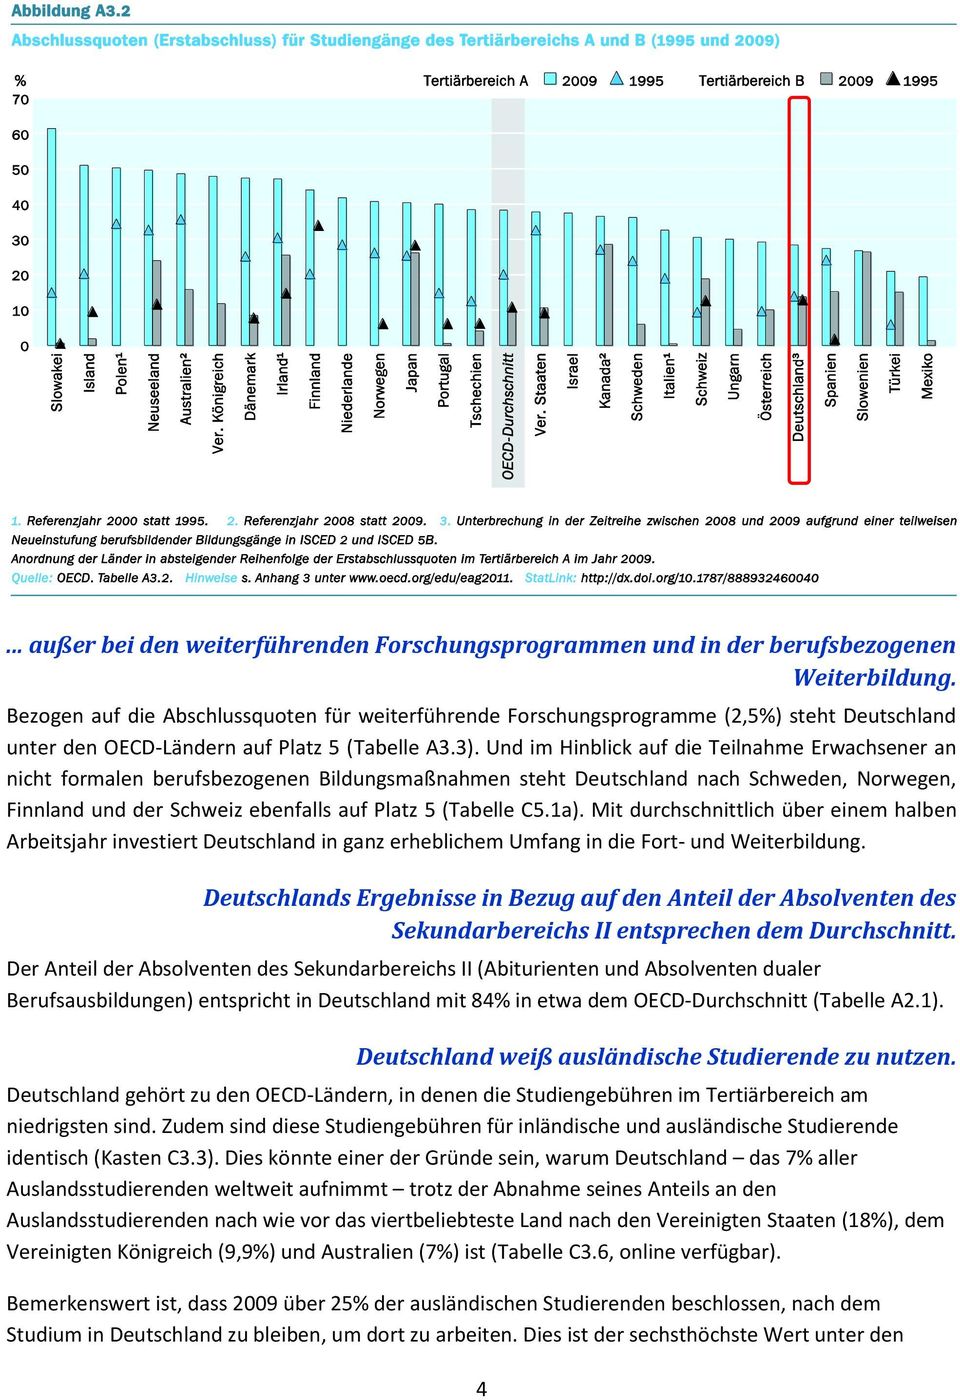 Und im Hinblick auf die Teilnahme Erwachsener an nicht formalen berufsbezogenen Bildungsmaßnahmen steht Deutschland nach Schweden, Norwegen, Finnland und der Schweiz ebenfalls auf Platz 5 (Tabelle C5.